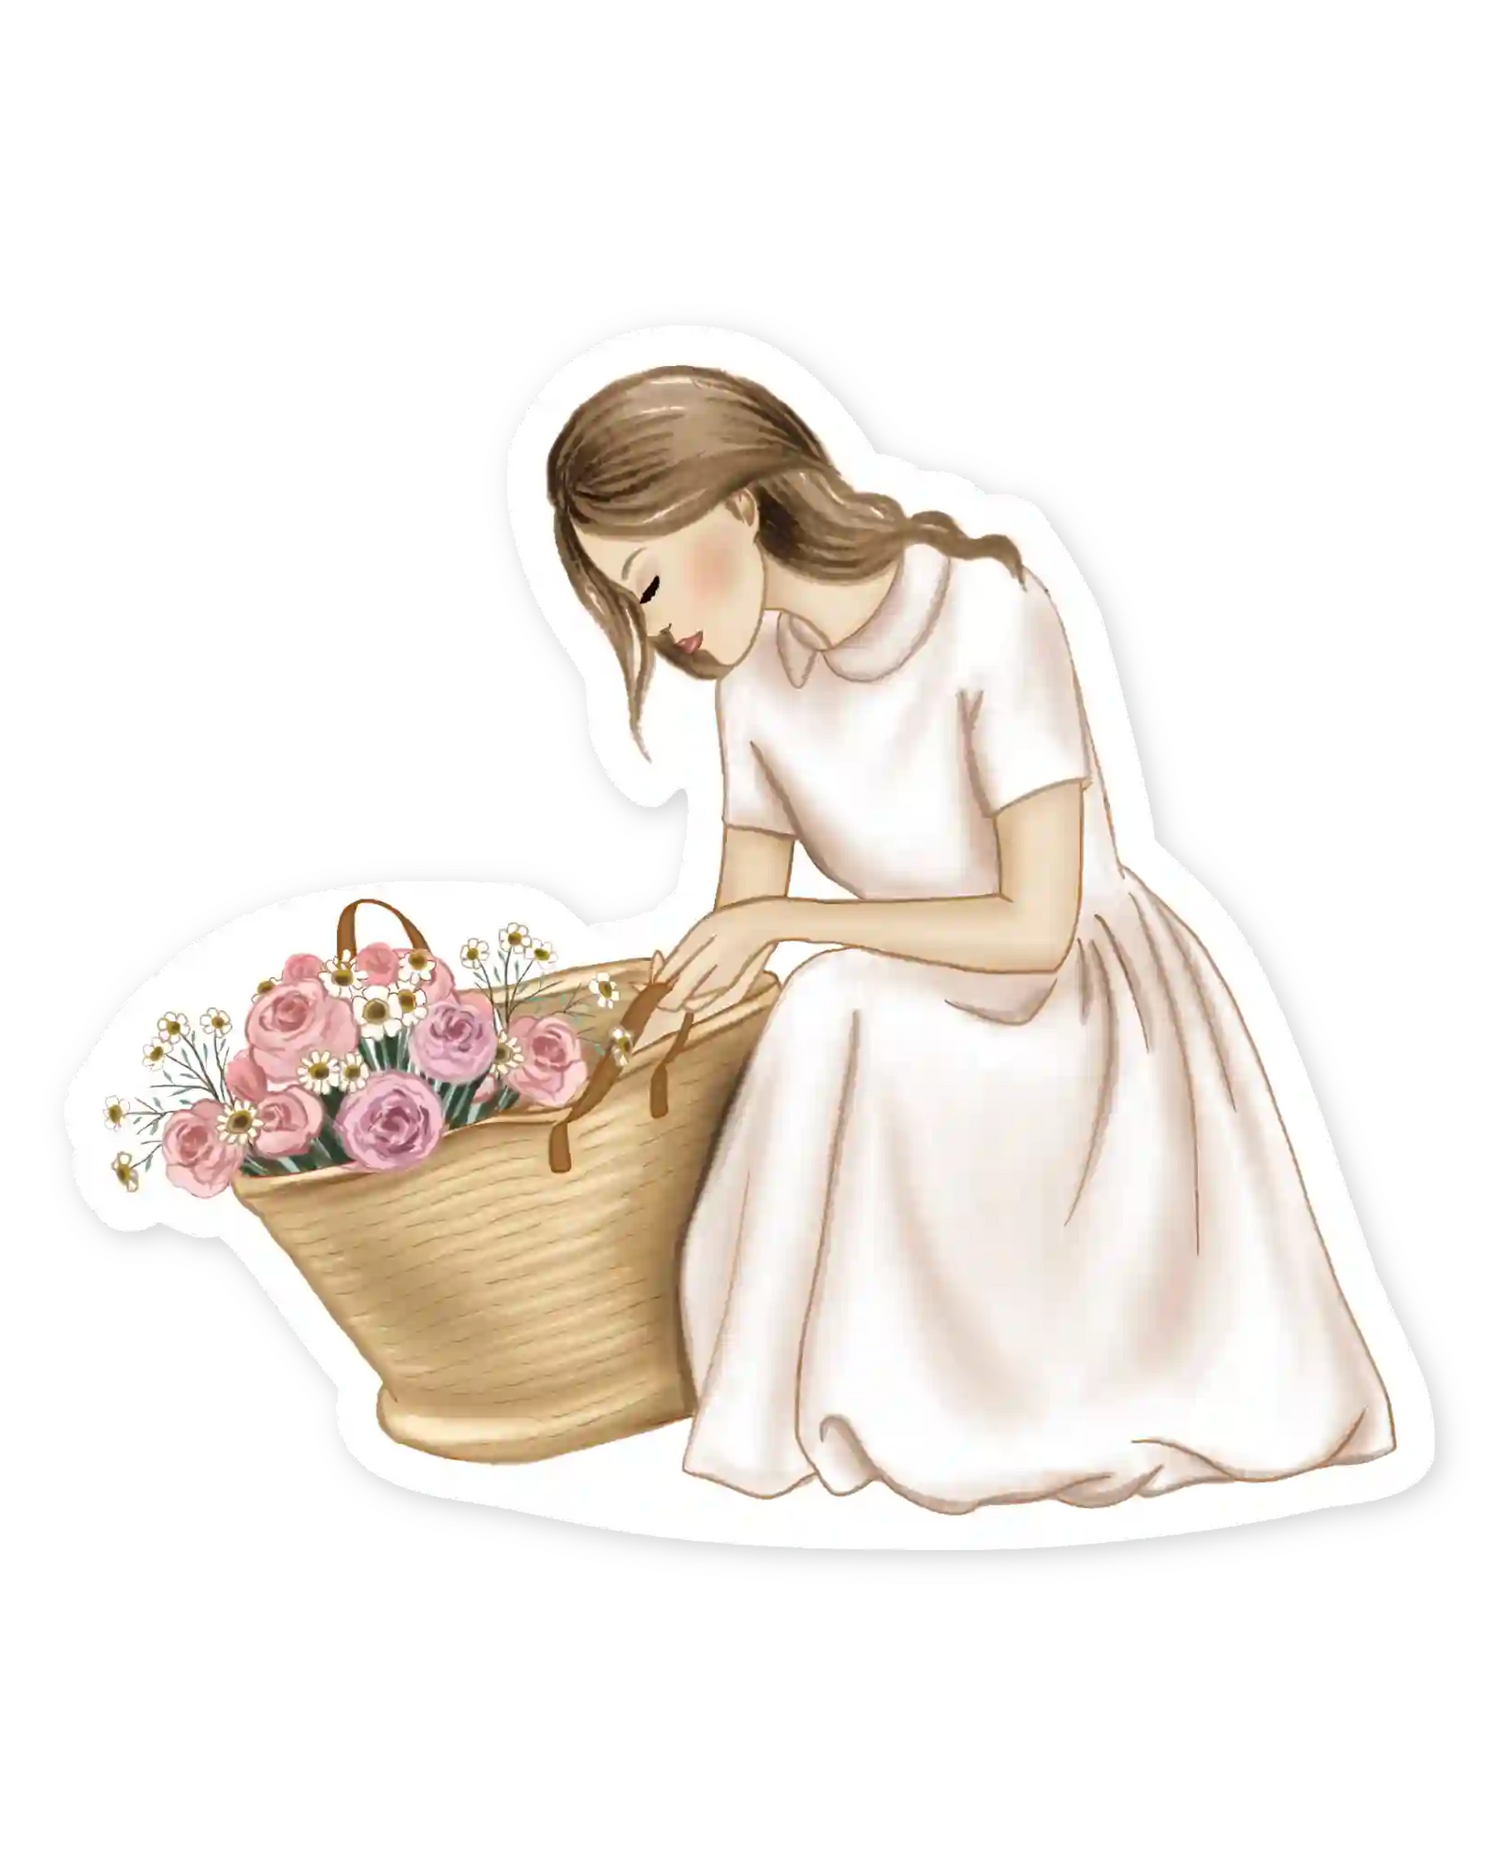 Naljepnice za planer Signd of spring, ilustracija detalj  djevojka stavlja cvijeće u korpu